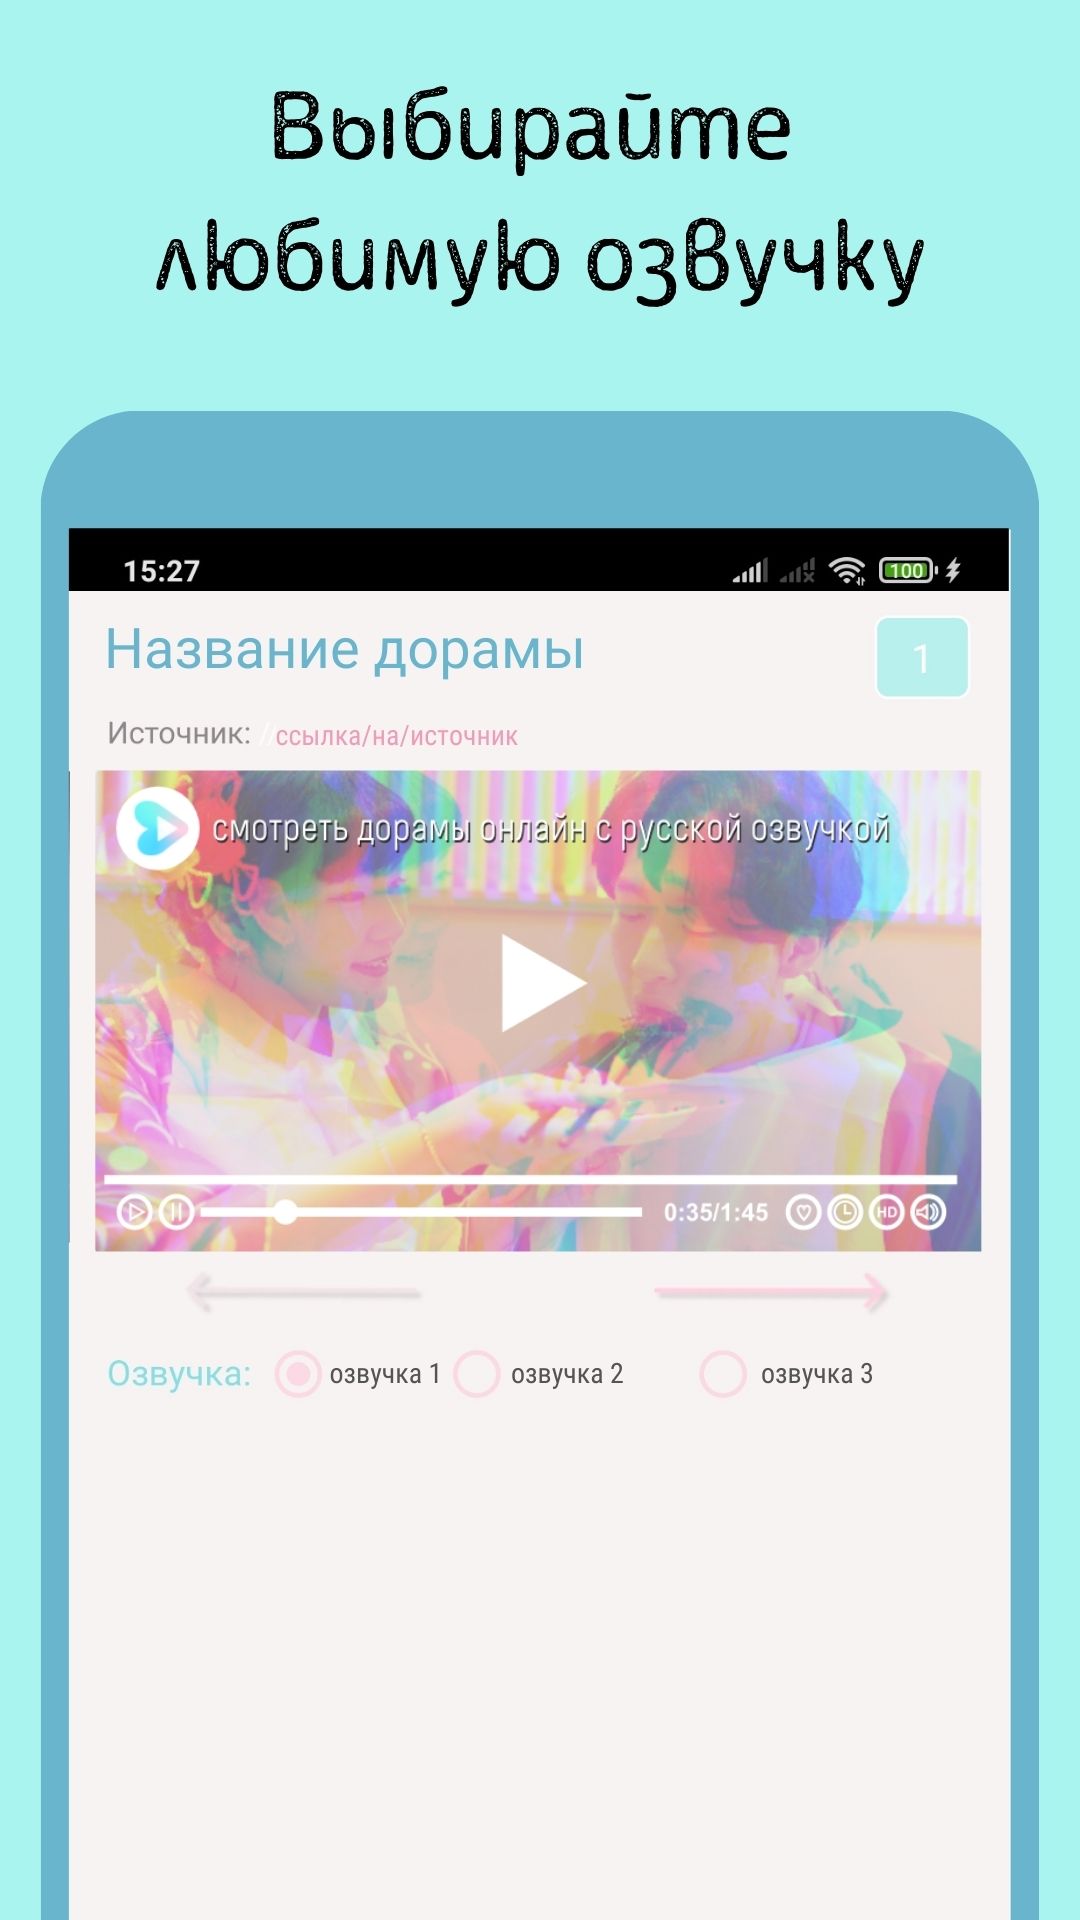 Скачать ЭГЁ – смотреть дорамы с русской озвучкой или субтитрами 1.0 для  Android